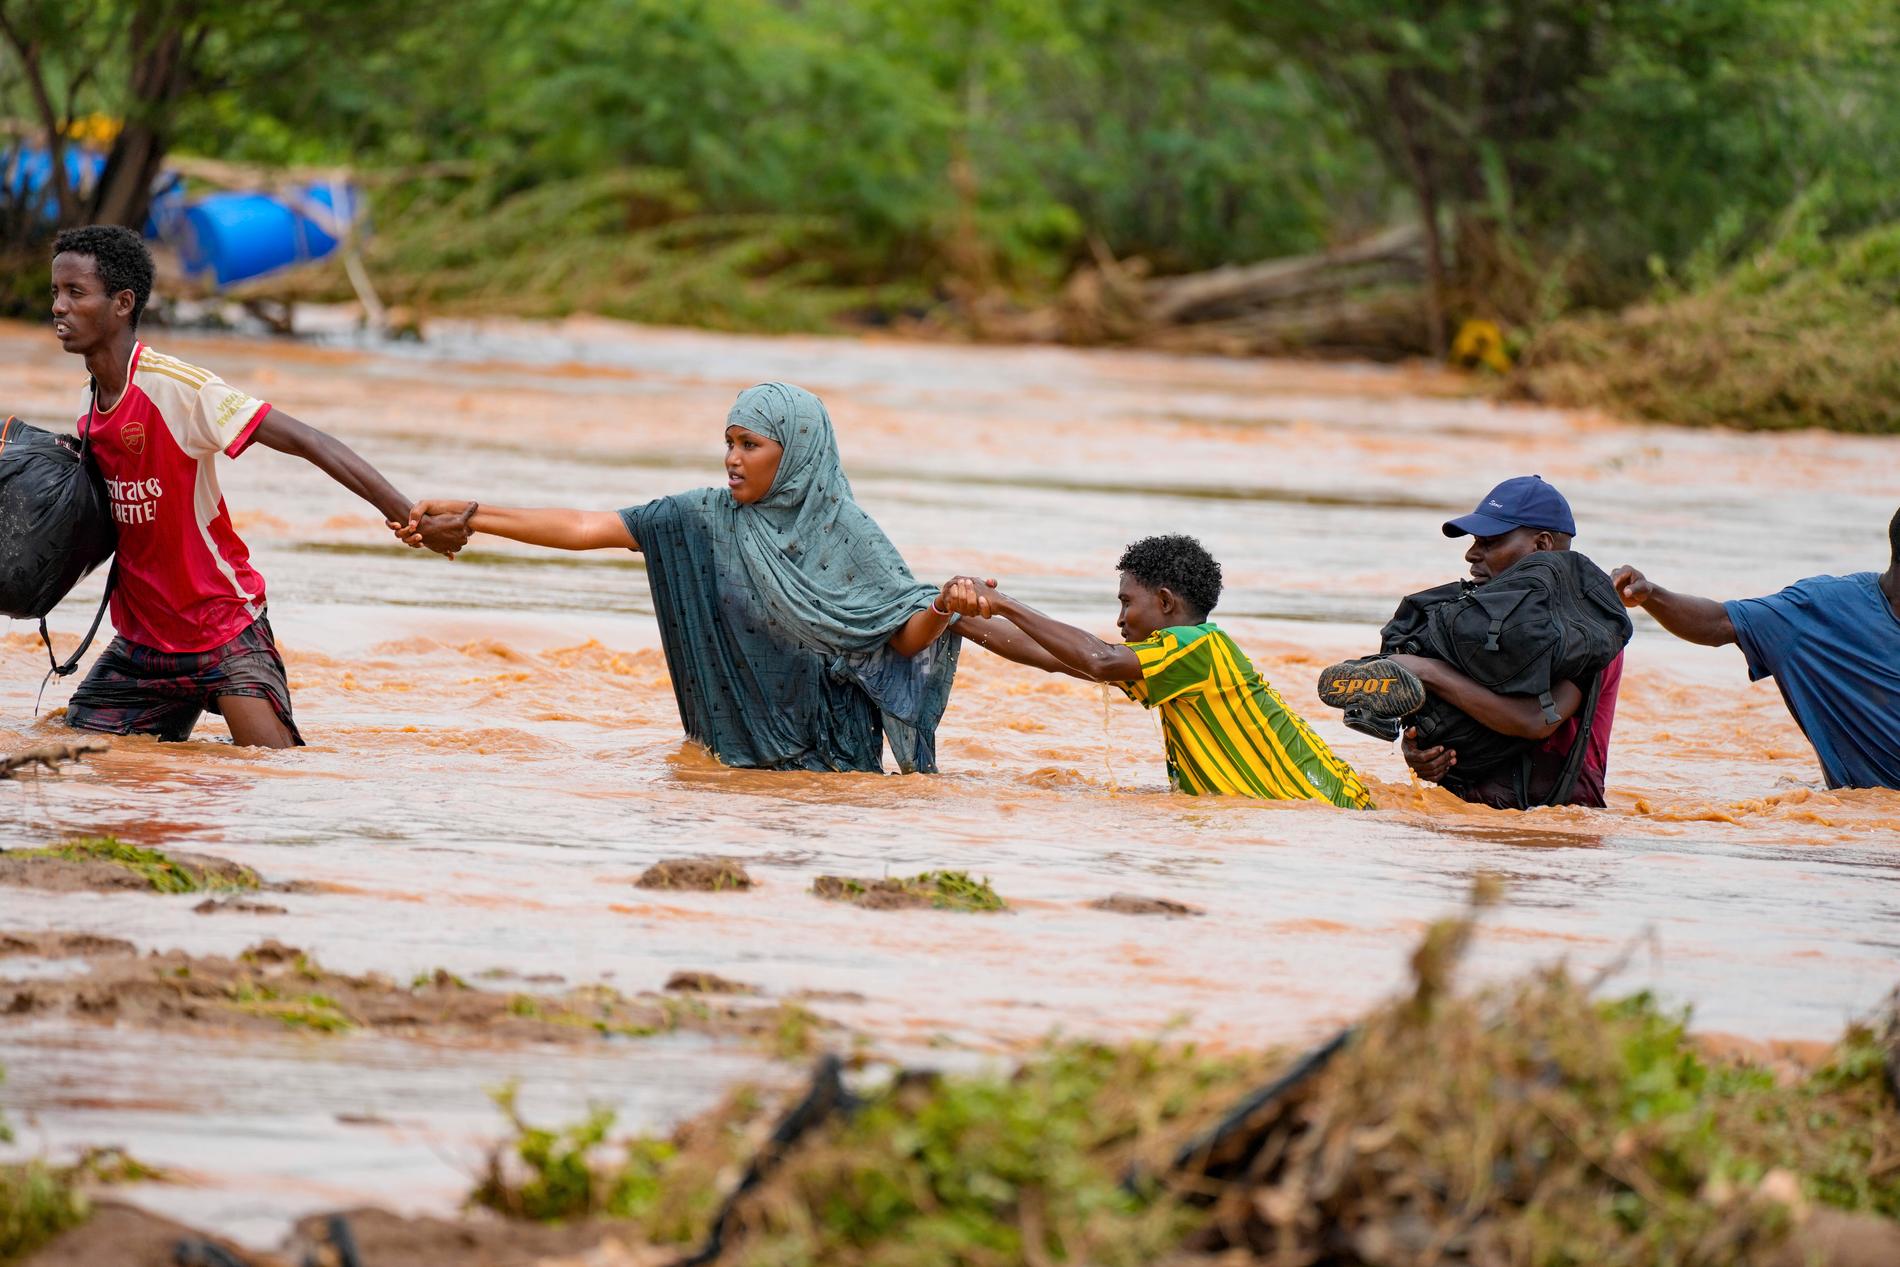 Människor försöker ta sig över floden Tana i Kenya efter översvämningar liknande dem söder om gränsen till Tanzania. Bild från förra veckan.